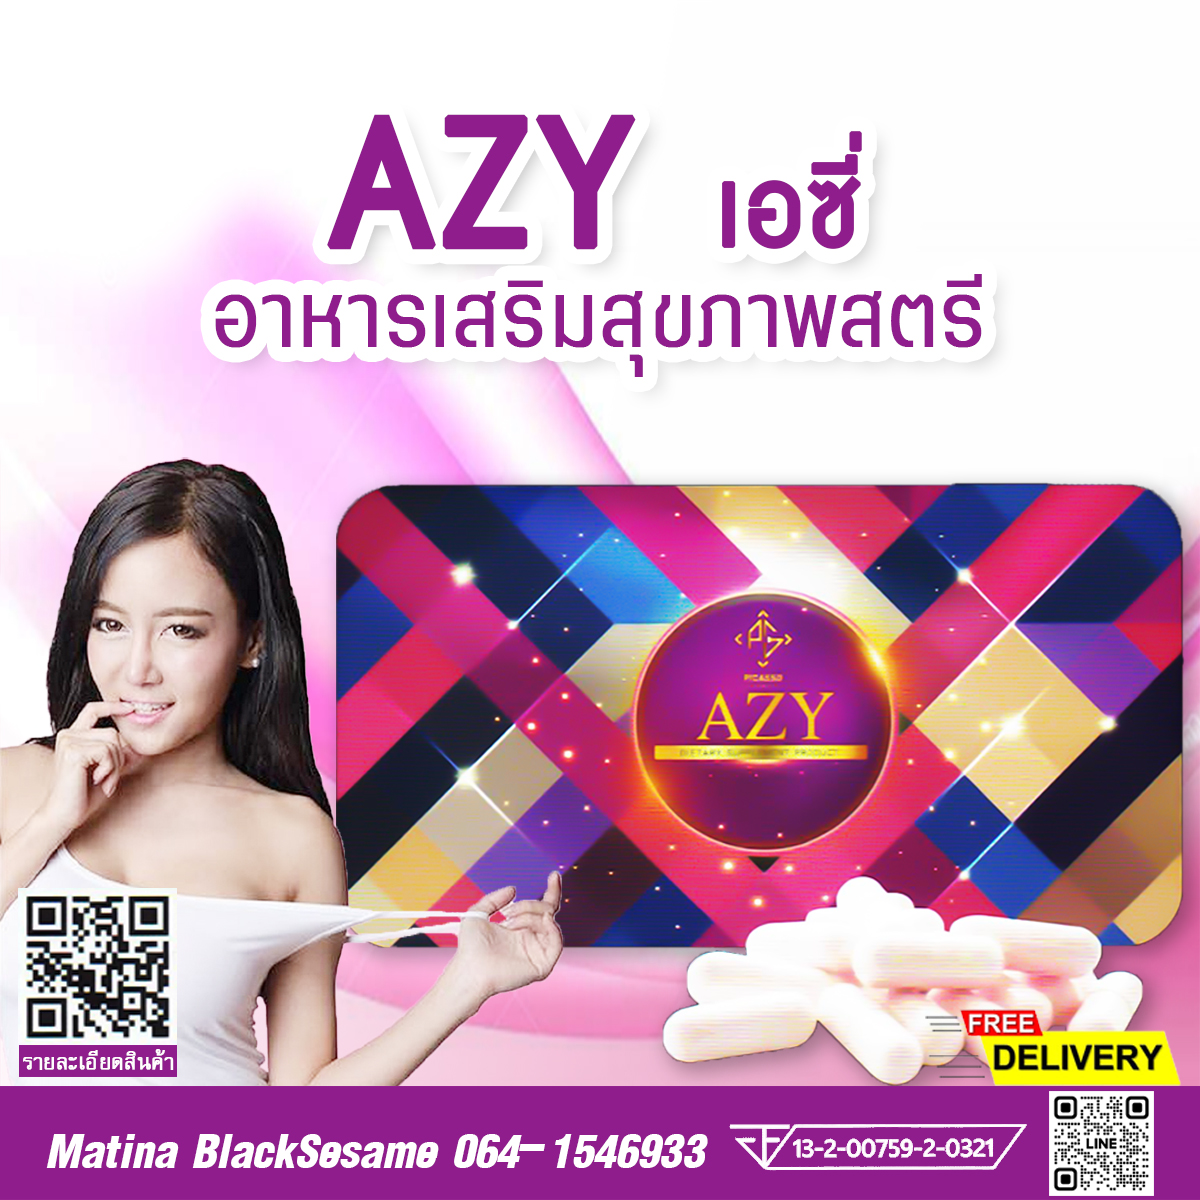 AZY เอซี่ ผลิตภัณฑ์เสริมอาหาร สำหรับคุณผู้หญิง